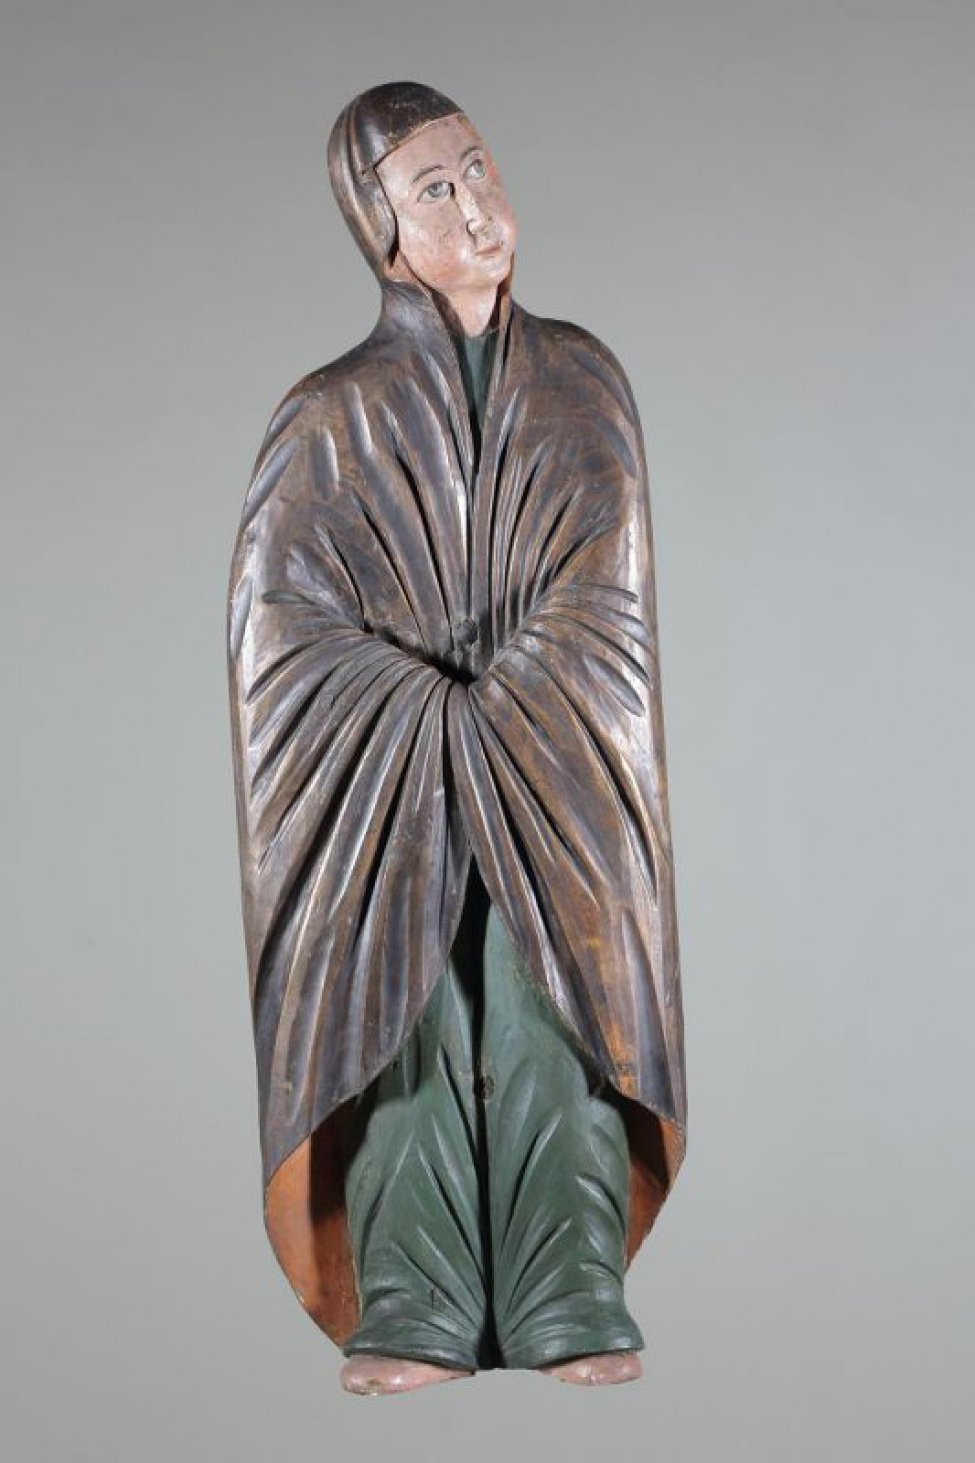 Мария Магдалина изображена со склоненной вправо головой, со сложенными на животе руками, закрытыми позолоченным гиматием, хитон - зеленовато-синий.